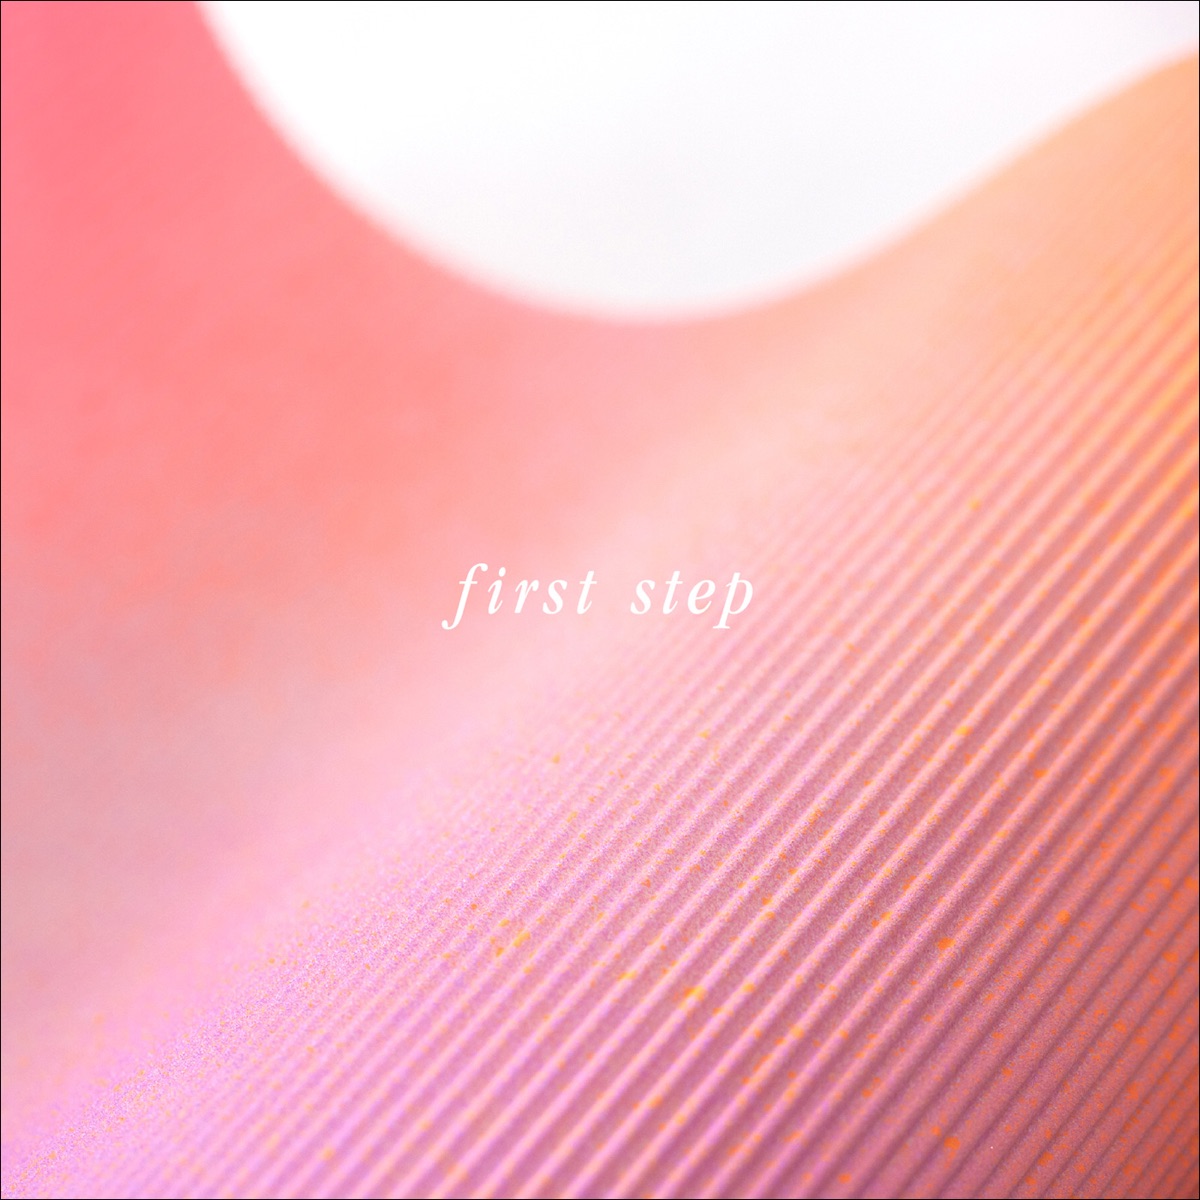 『雨のパレード - first step』収録の『first step』ジャケット